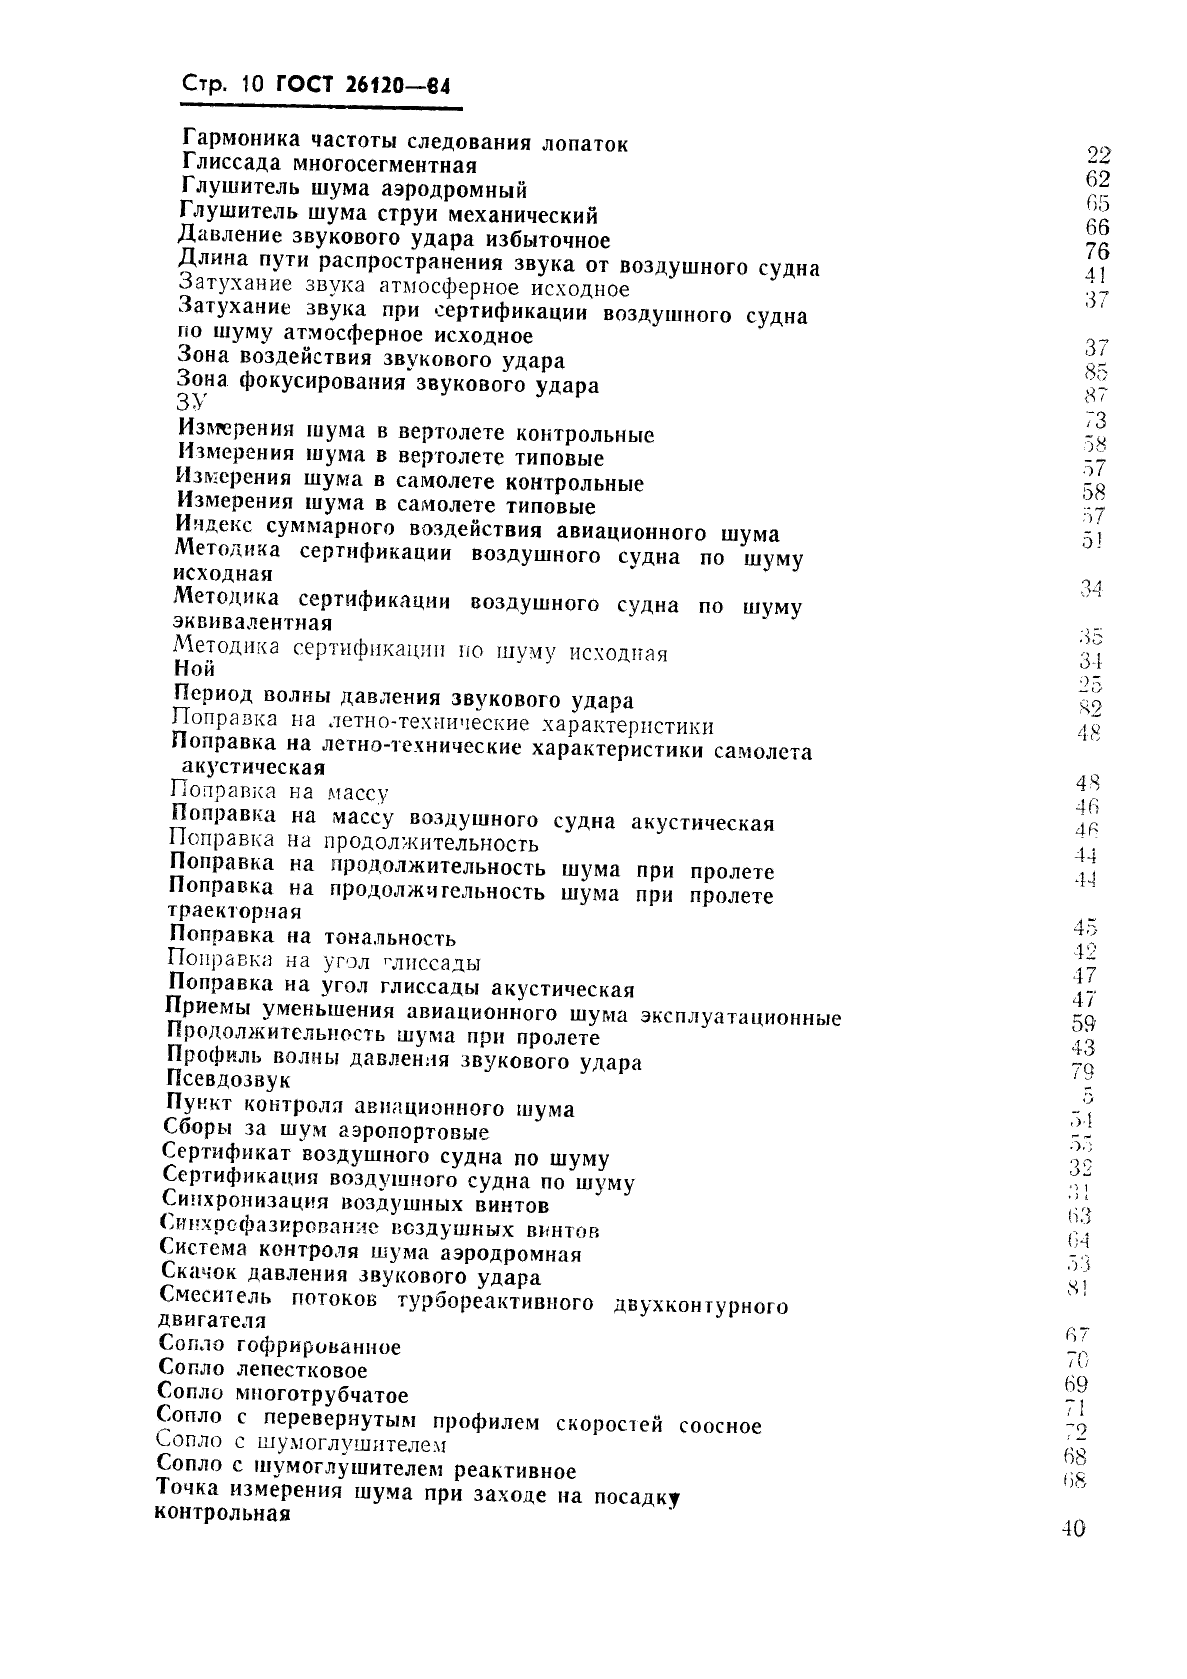 ГОСТ 26120-84 Акустика авиационная. Термины и определения (фото 11 из 15)